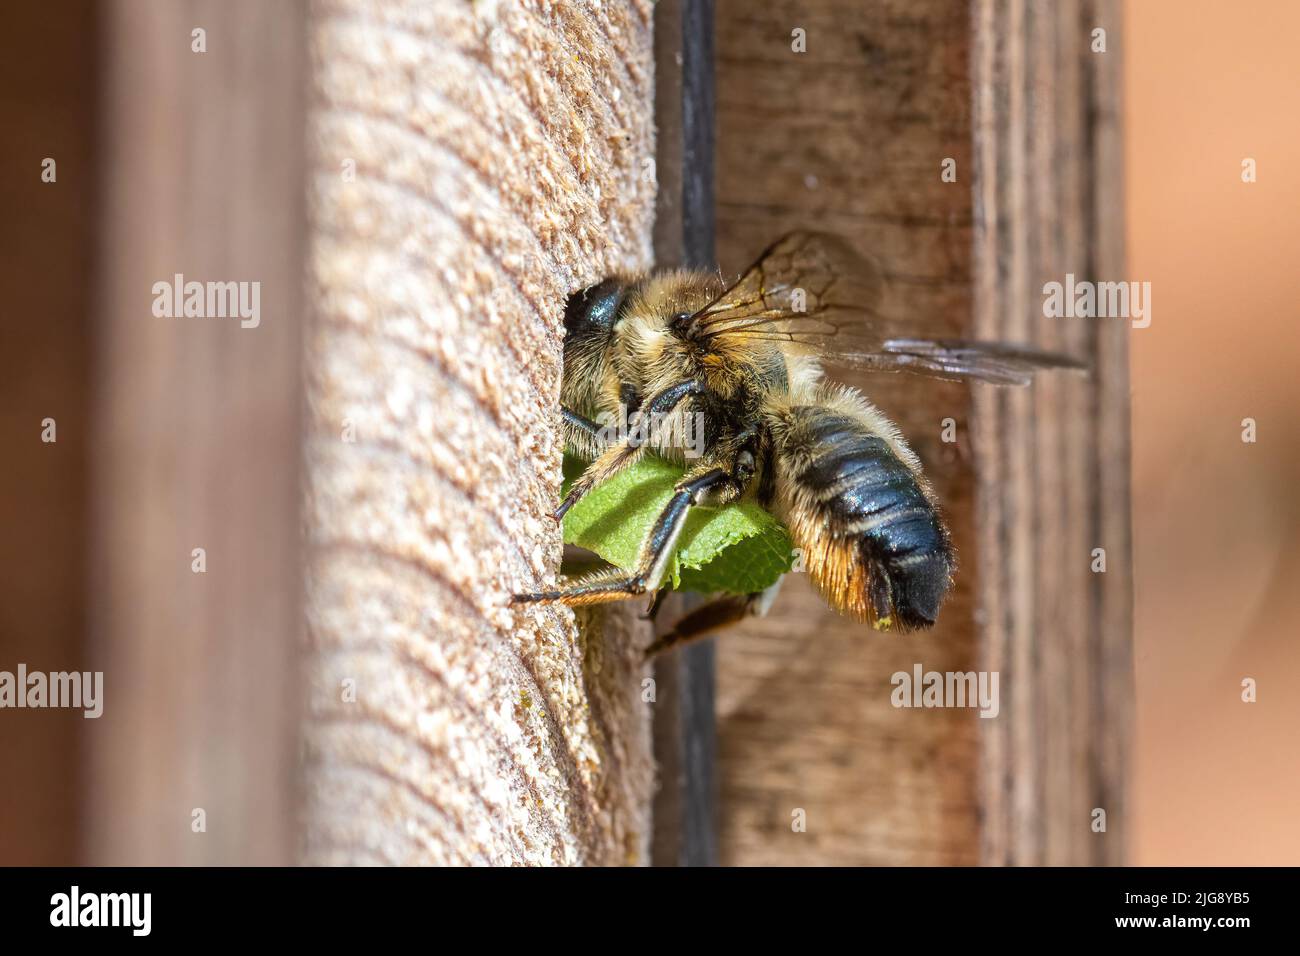 Patchwork-Blätterbiene (Megachile centuncularis), die in einem Bienenhotel, das einen Abschnitt eines Blattes trägt, in ihr Nestloch eindringt, Hampshire, England, Großbritannien Stockfoto